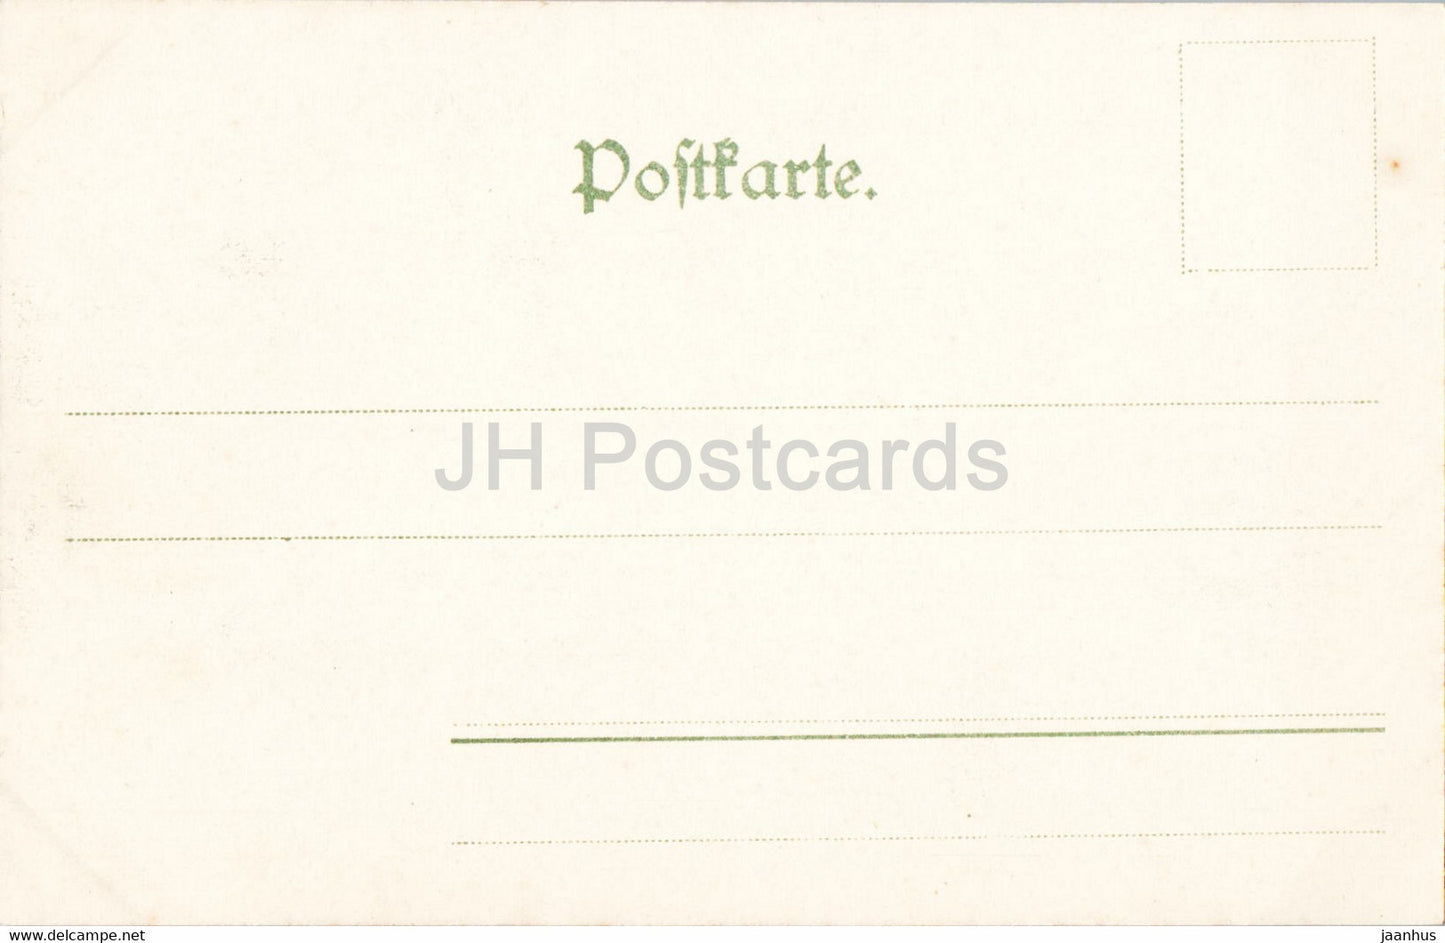 Die Gansfelsen - Bastei - Sachs Schweiz - 198 - alte Postkarte - Deutschland - unbenutzt